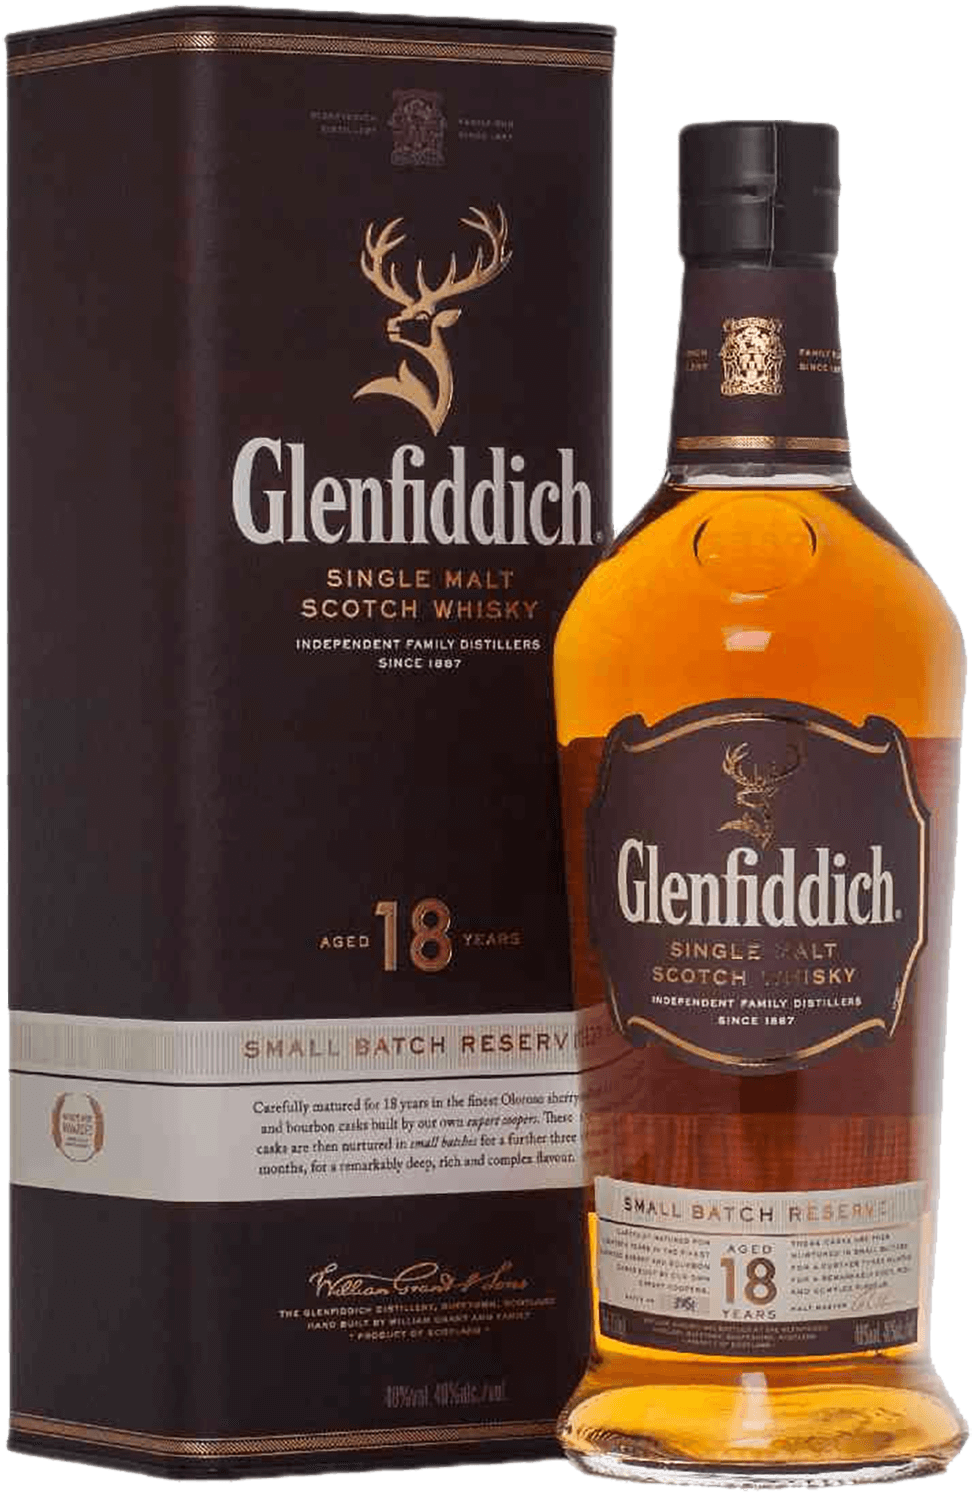 Glenfiddich 18 y.o. Single Malt Scotch Whisky (gift box) glenfiddich single malt scotch whisky 15 yo gift box